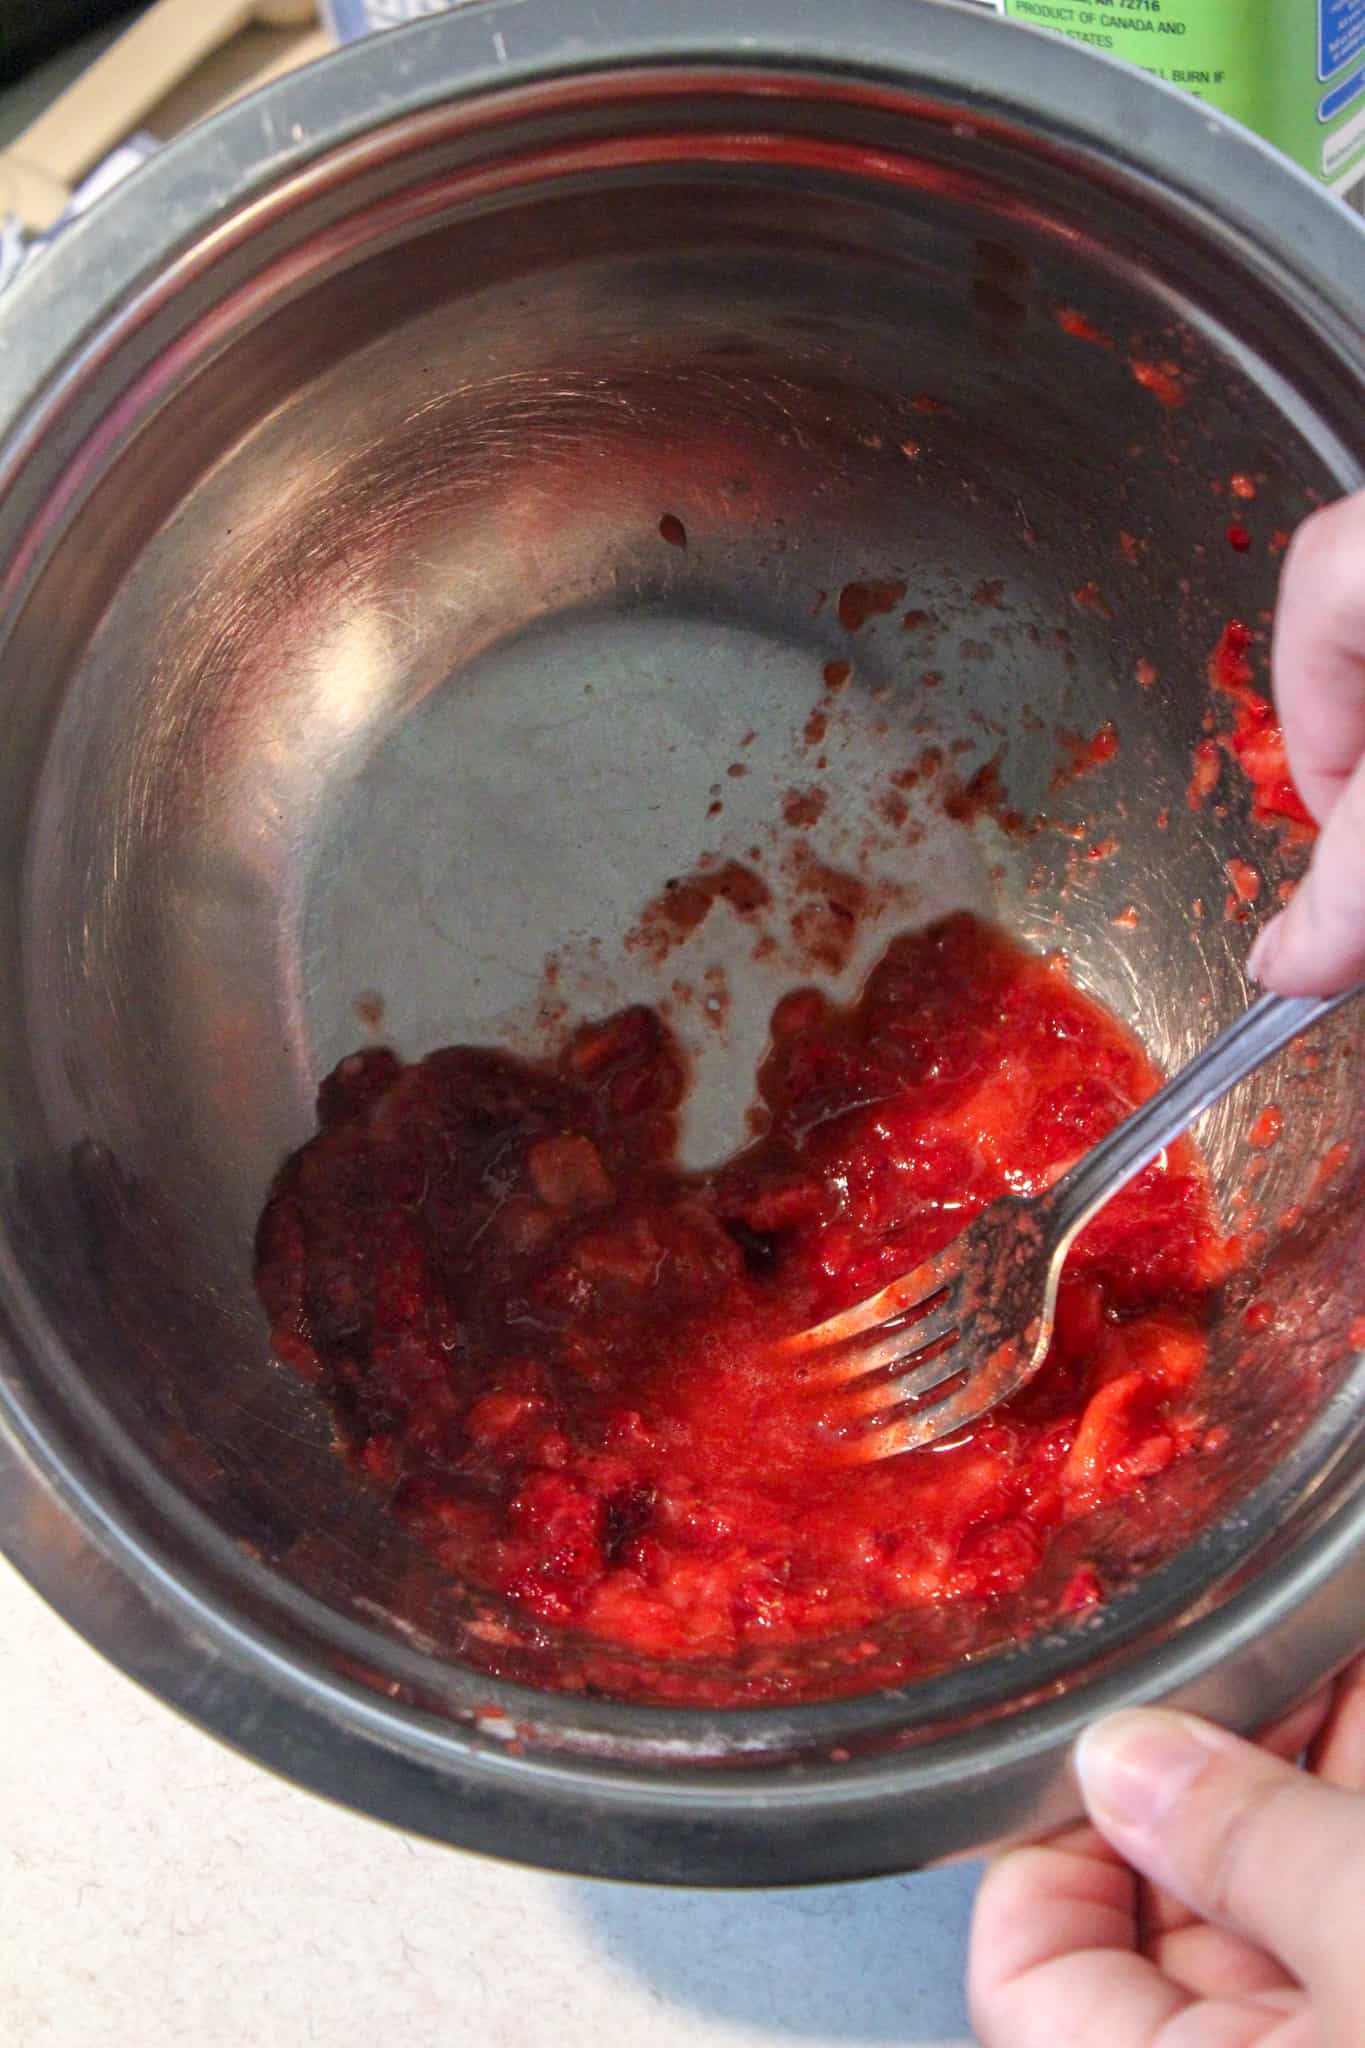 strawberry glaze in a bowl